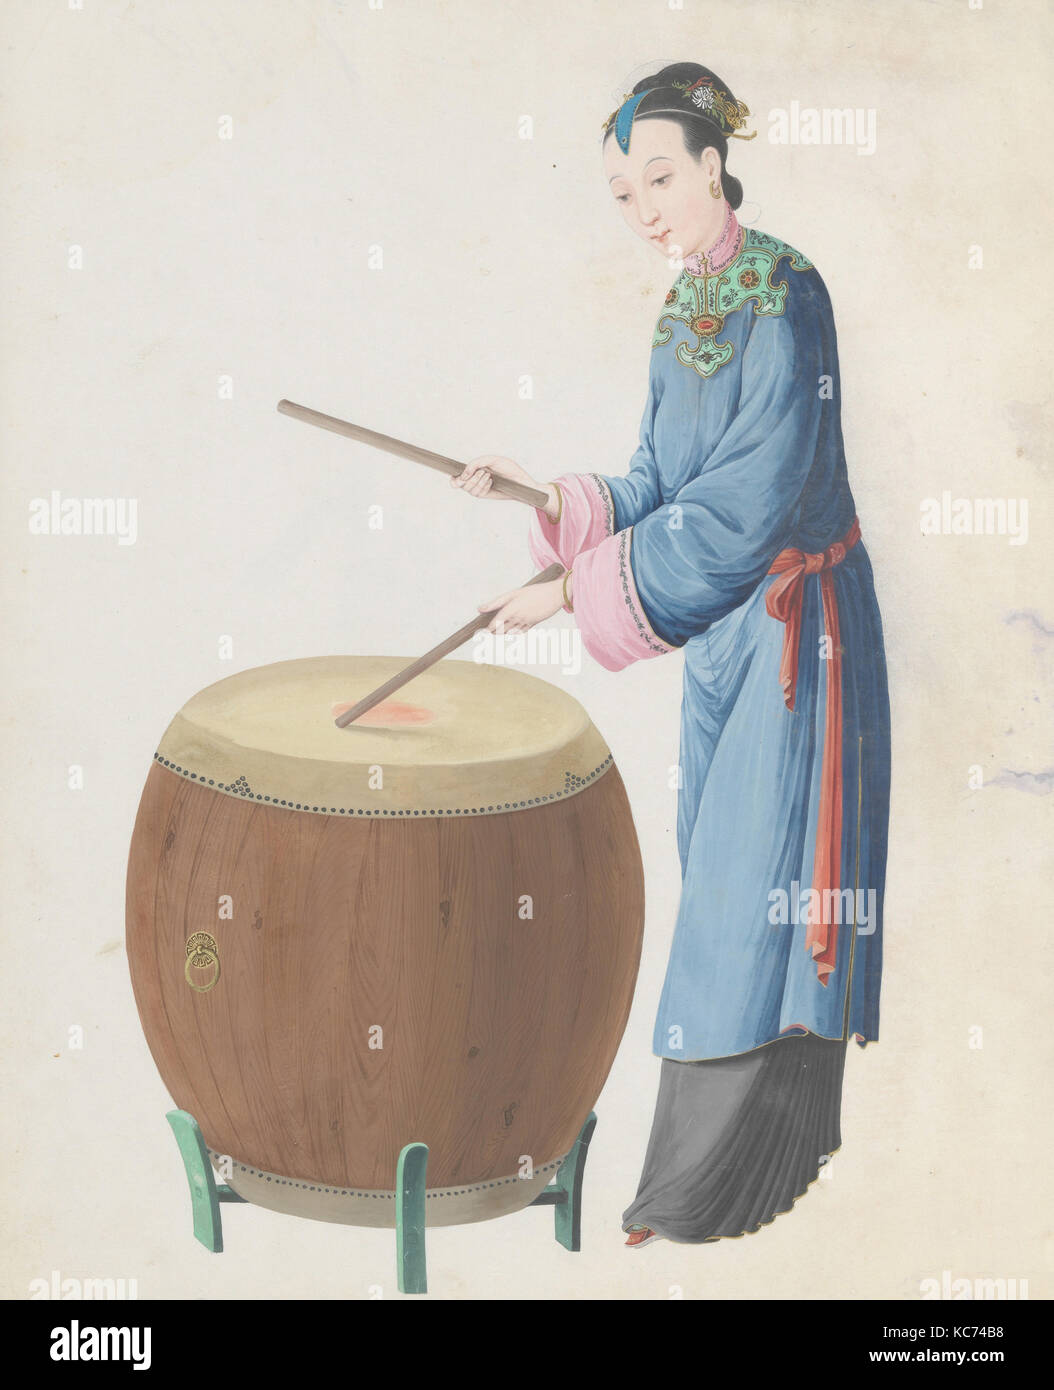 Aquarelle de musicien jouant jingu, fin du 18e siècle Banque D'Images